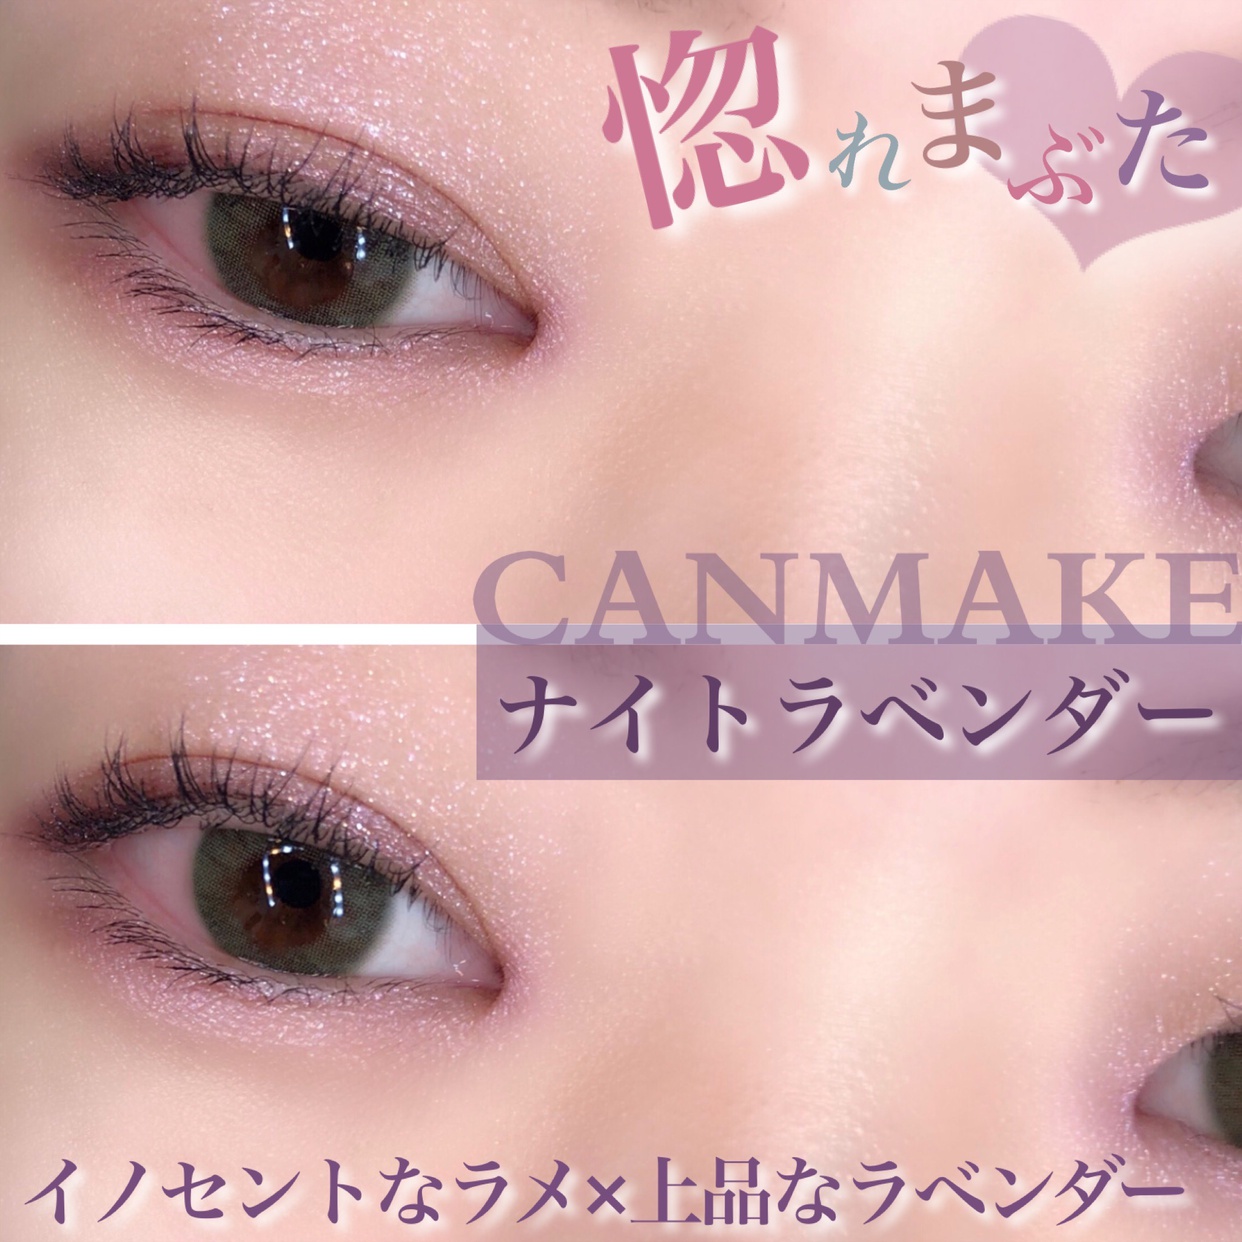 CANMAKE(キャンメイク) ジューシーピュアアイズに関するsatomiさんの口コミ画像1